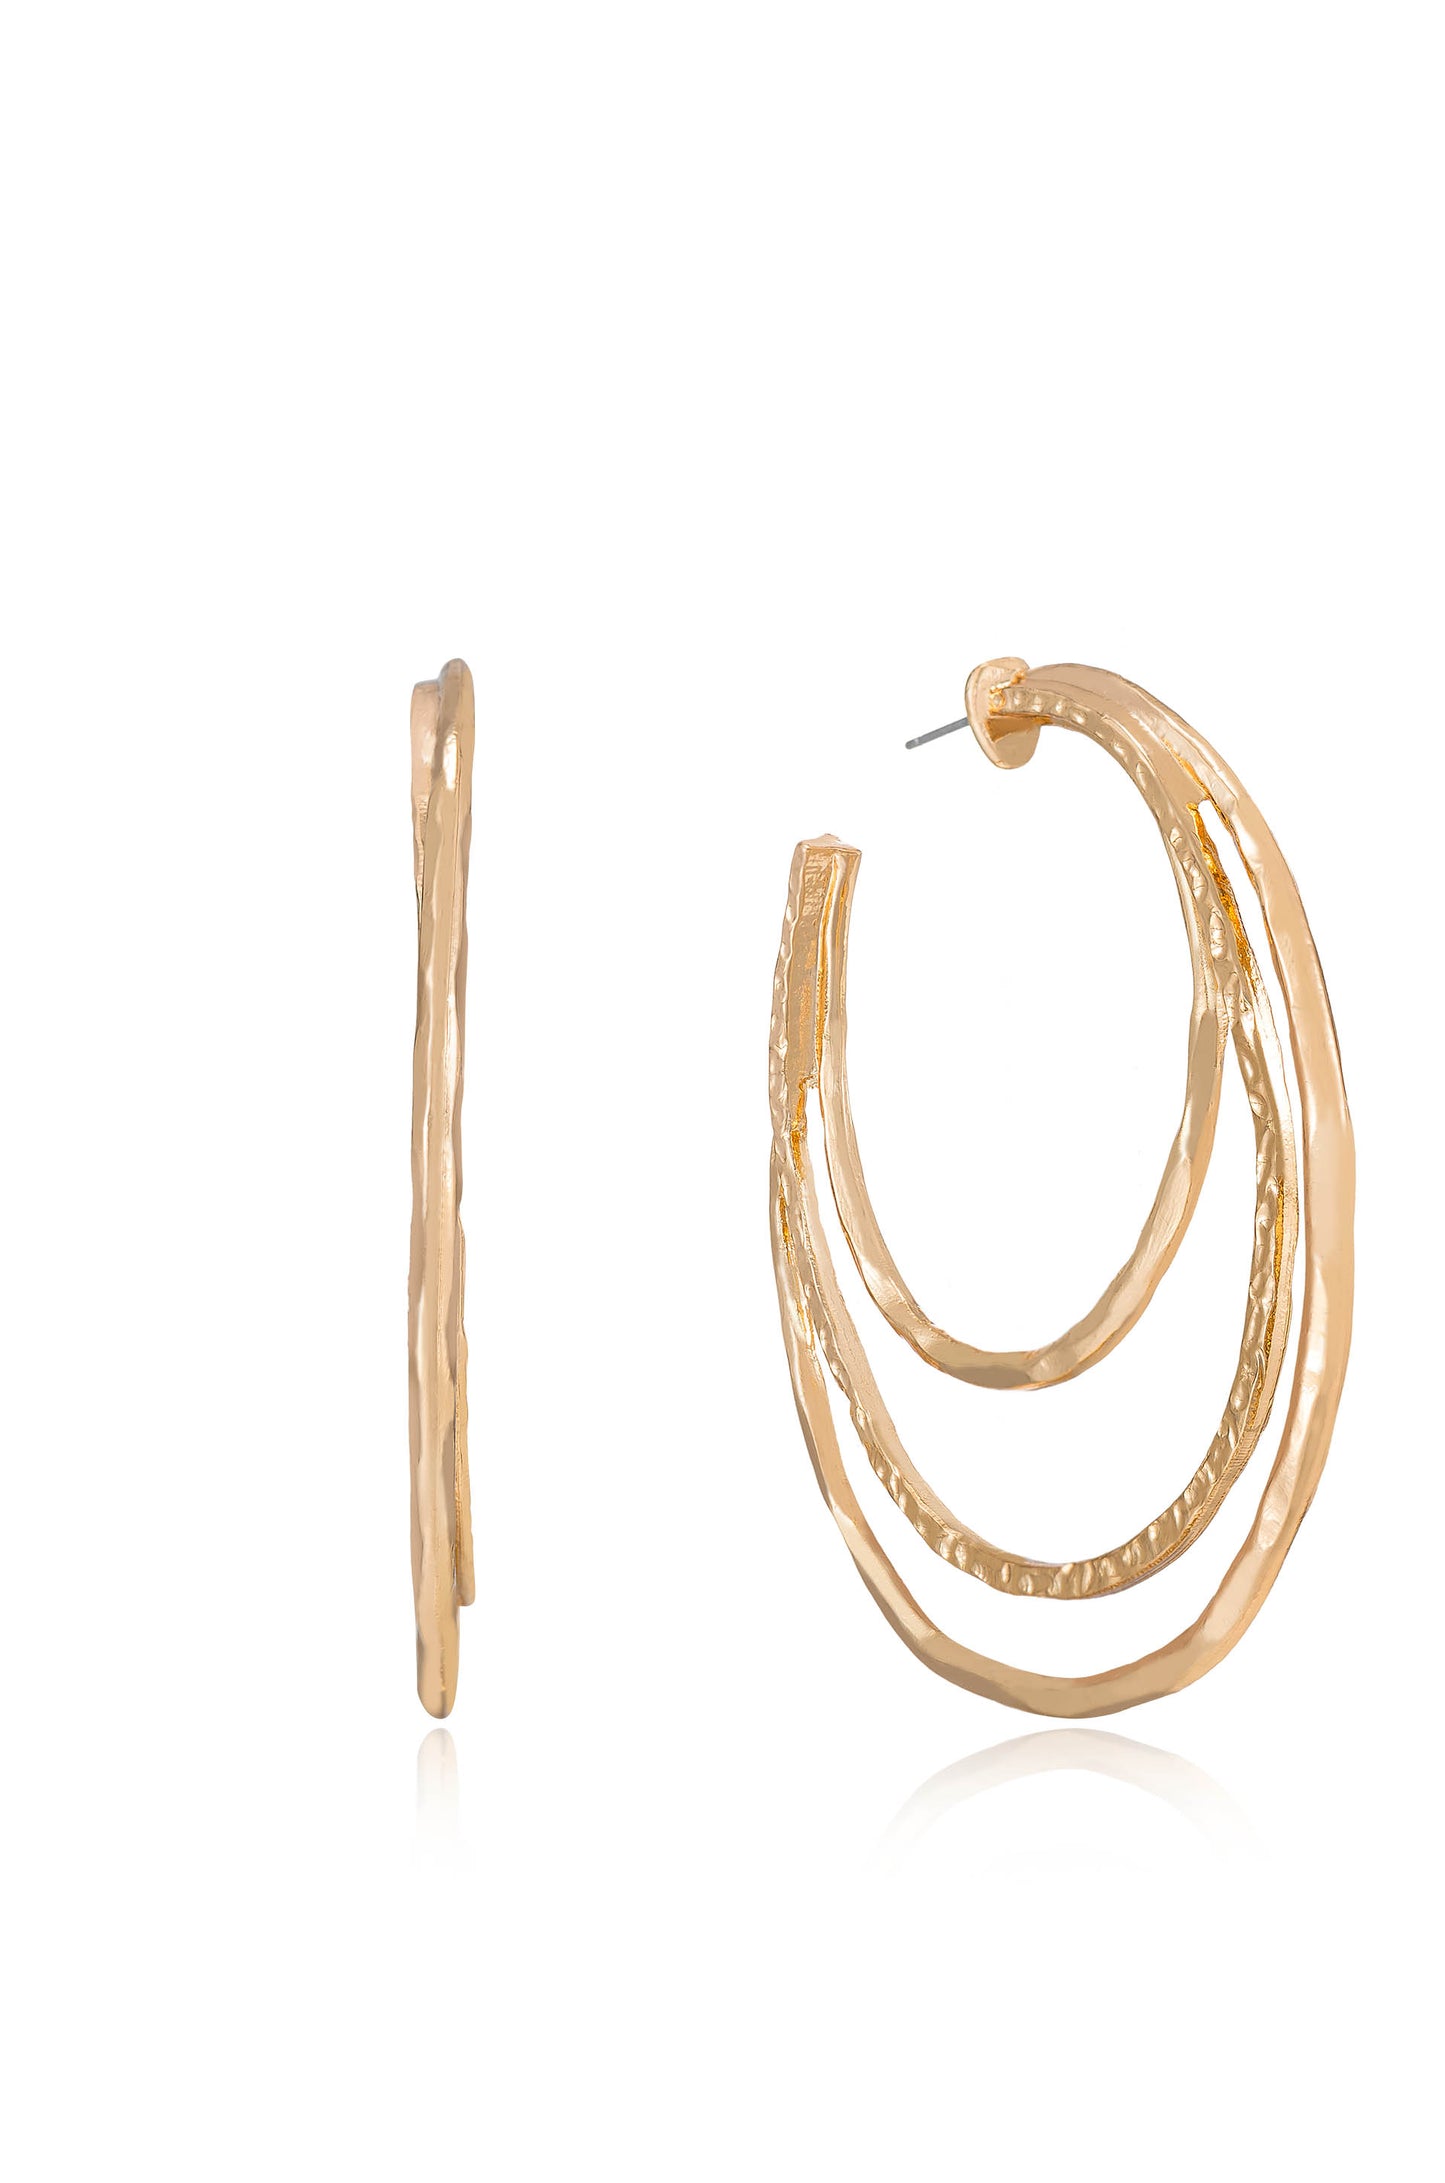 Handworked 18k Gold Plated Hoop Earrings